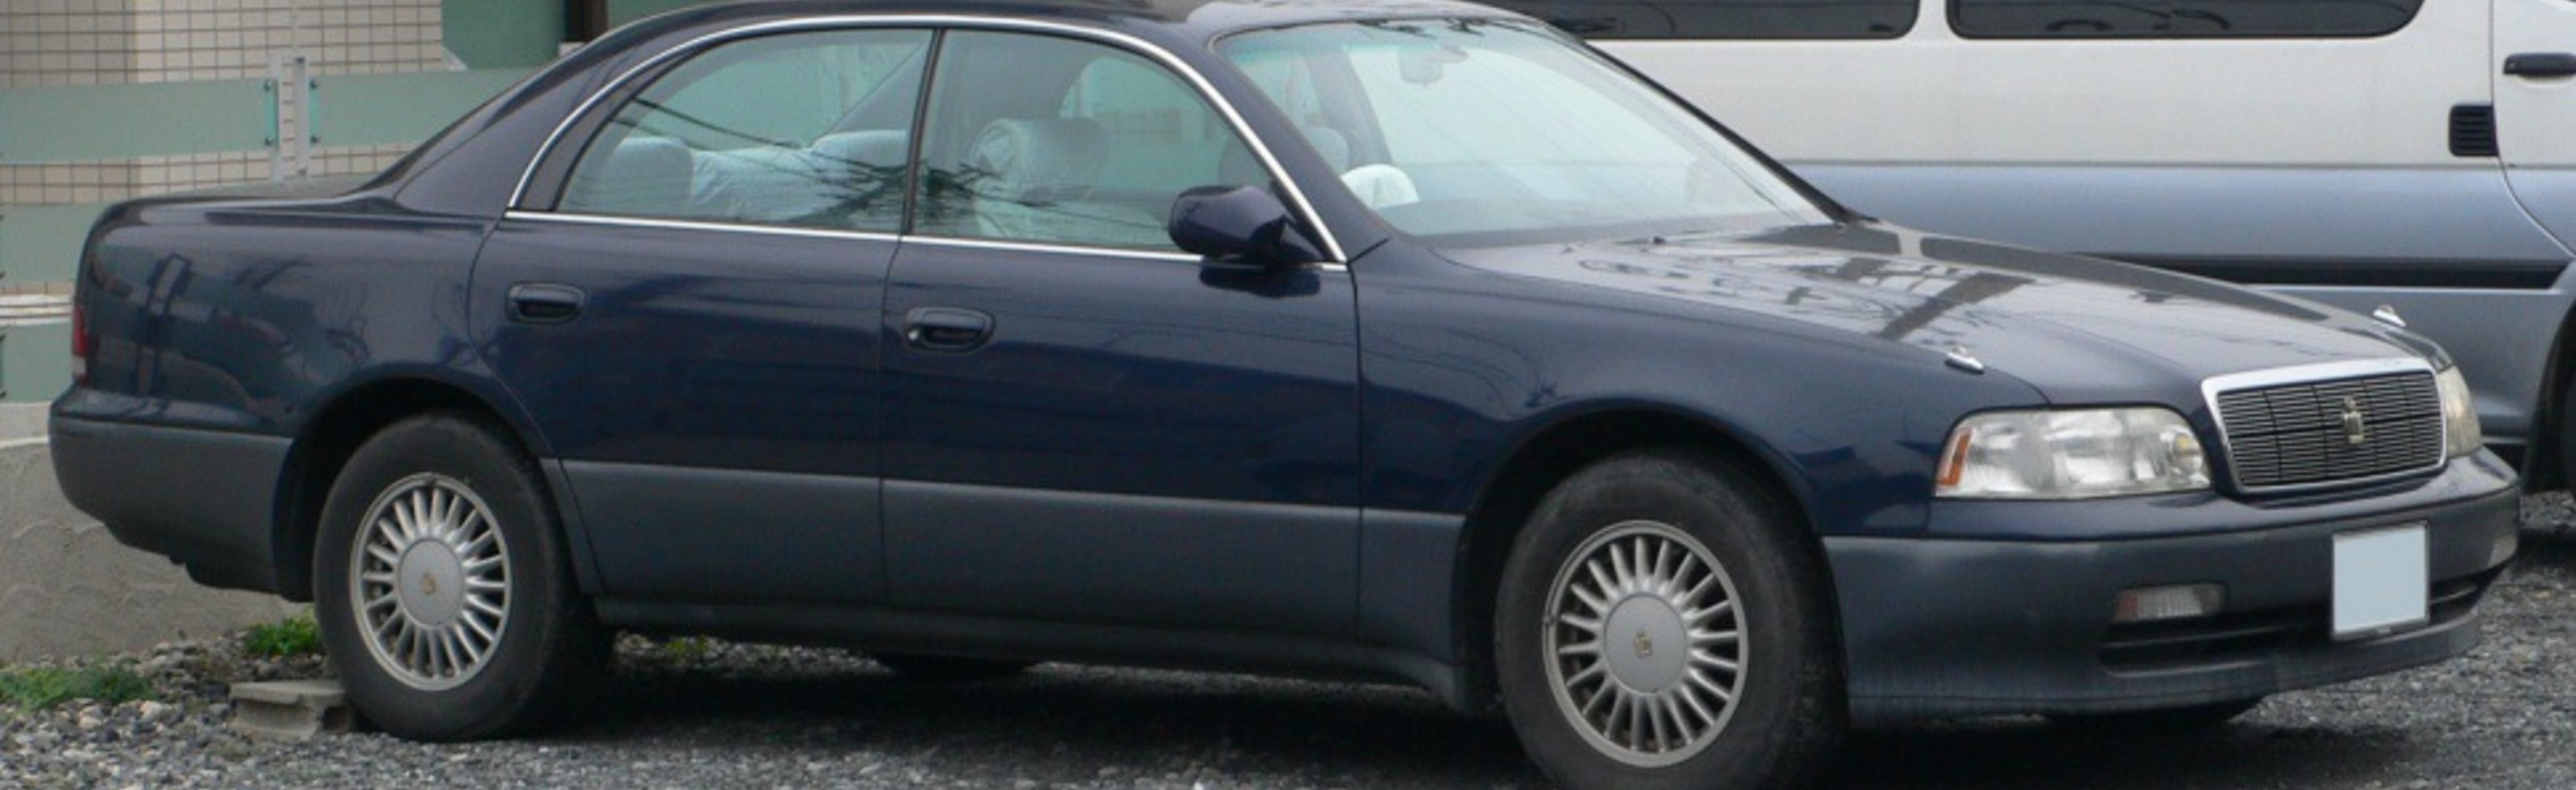 Toyota Crown Majesta I (S140) 3.0i V6 24V (230 Hp) Automatic 1991, 1992, 1993 